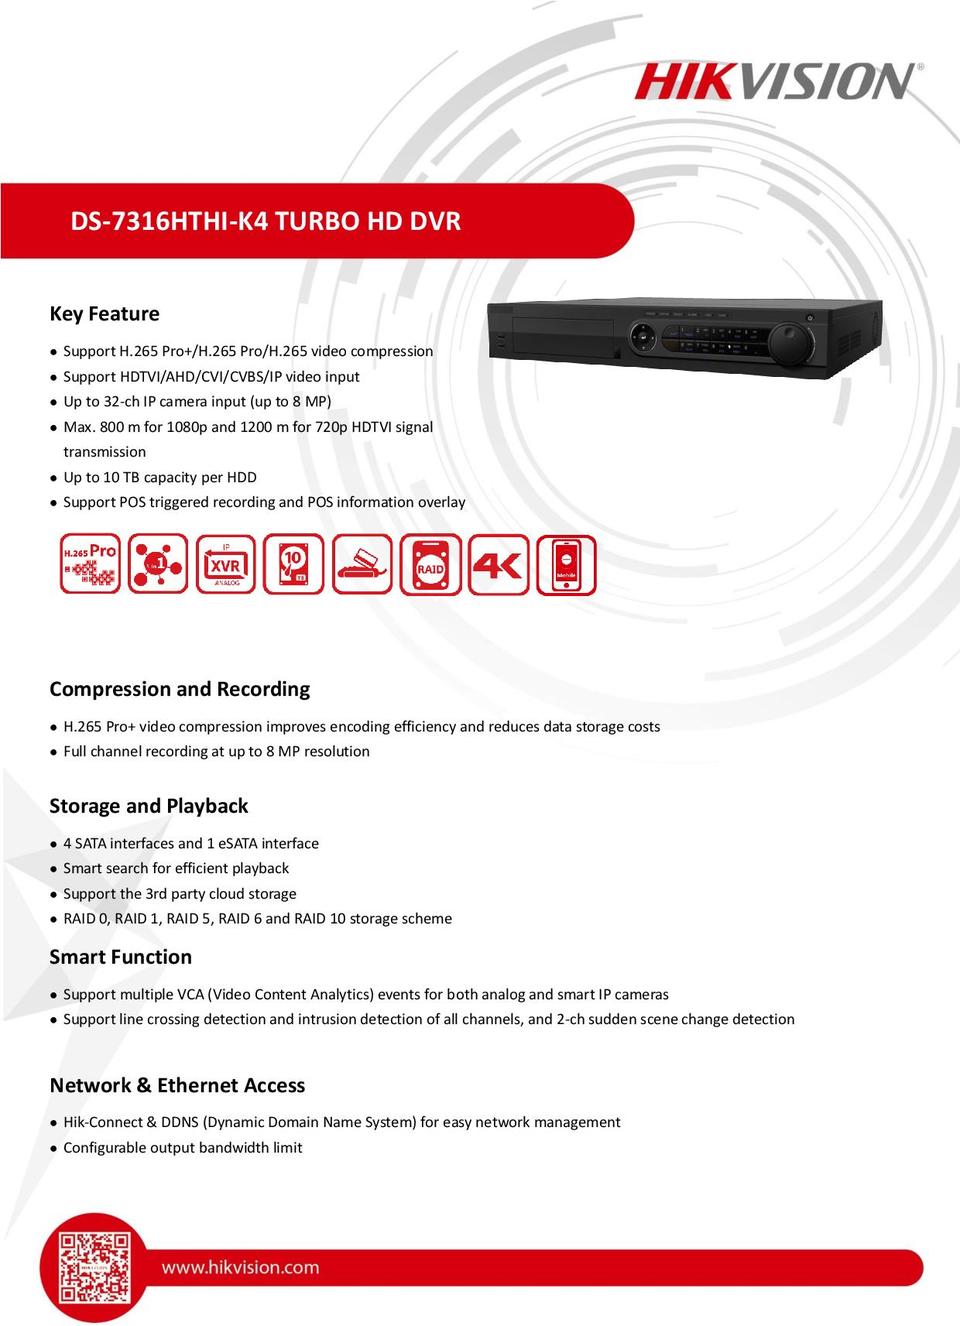 Hikvision DS-7316HTHI-K4 16CH 4K 8MP HD-TVI DVR - Includes 3TB Hard Drive 0